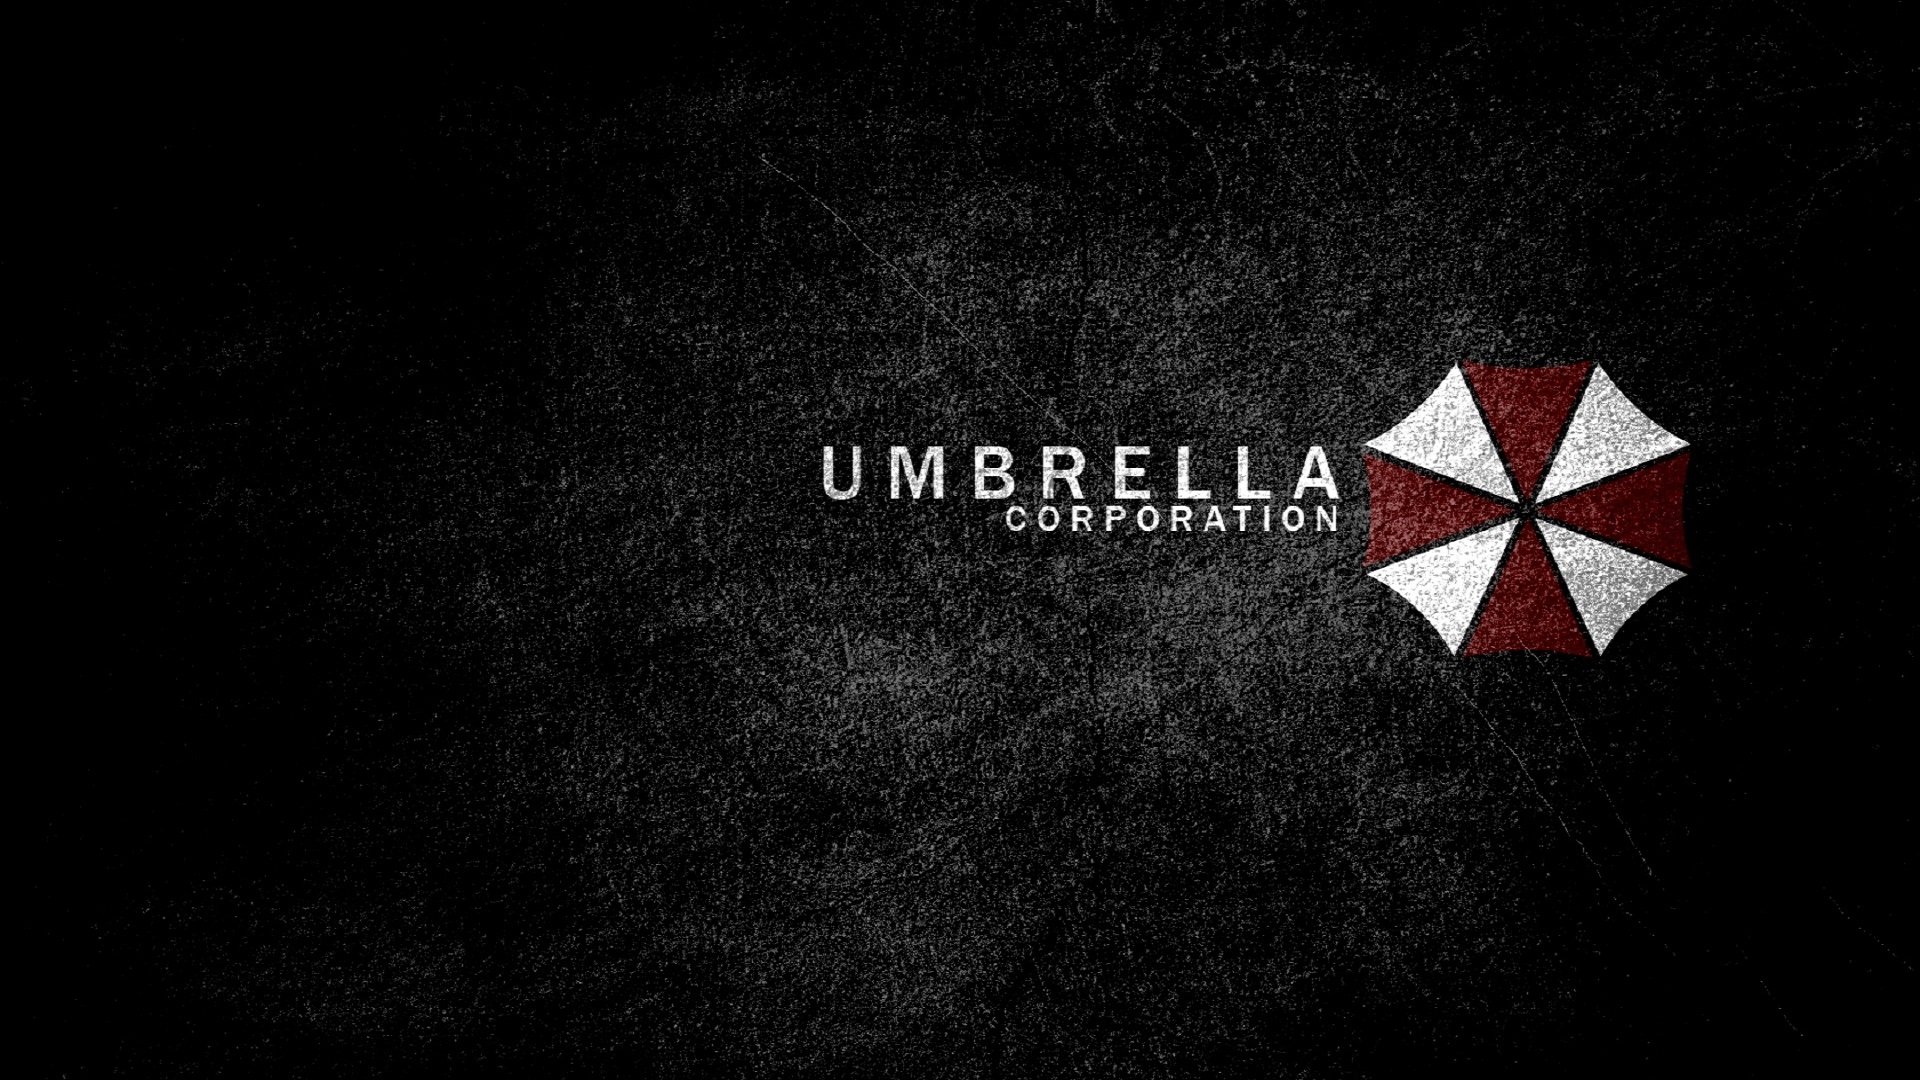 272 Resident Evil Fondos De Pantalla Hd Fondos De Escritorio | Images ...